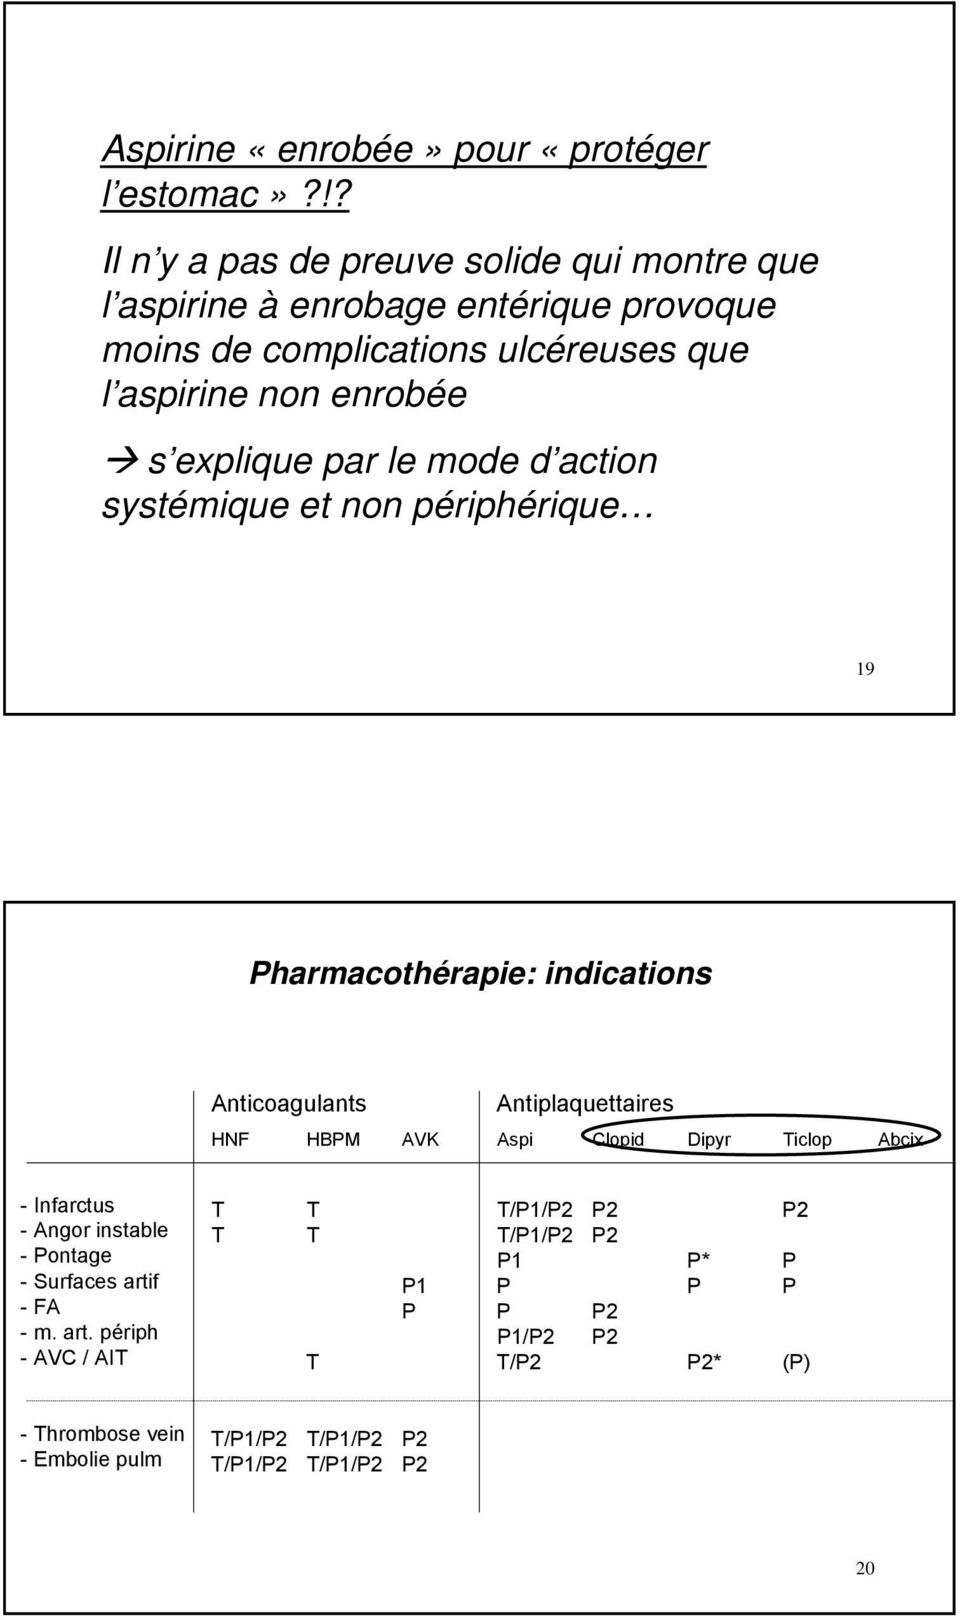 explique par le mode d action systémique et non périphérique 19 Pharmacothérapie: indications Anticoagulants Antiplaquettaires HNF HBPM AVK Aspi Clopid